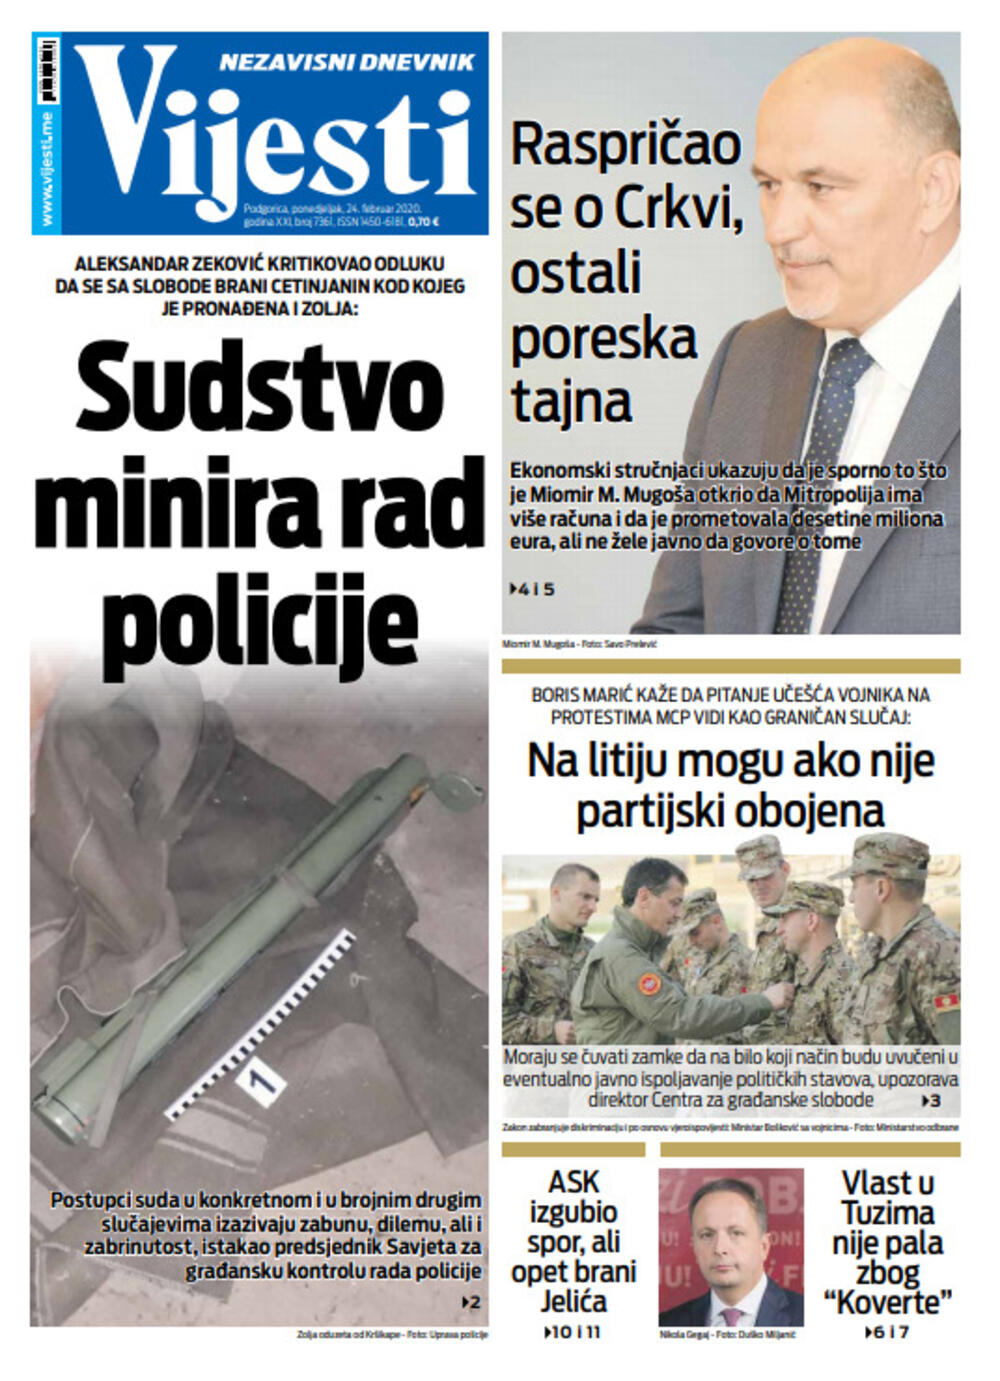 Naslovna strana "Vijesti" za 24. februar 2020. godine, Foto: "Vijesti"